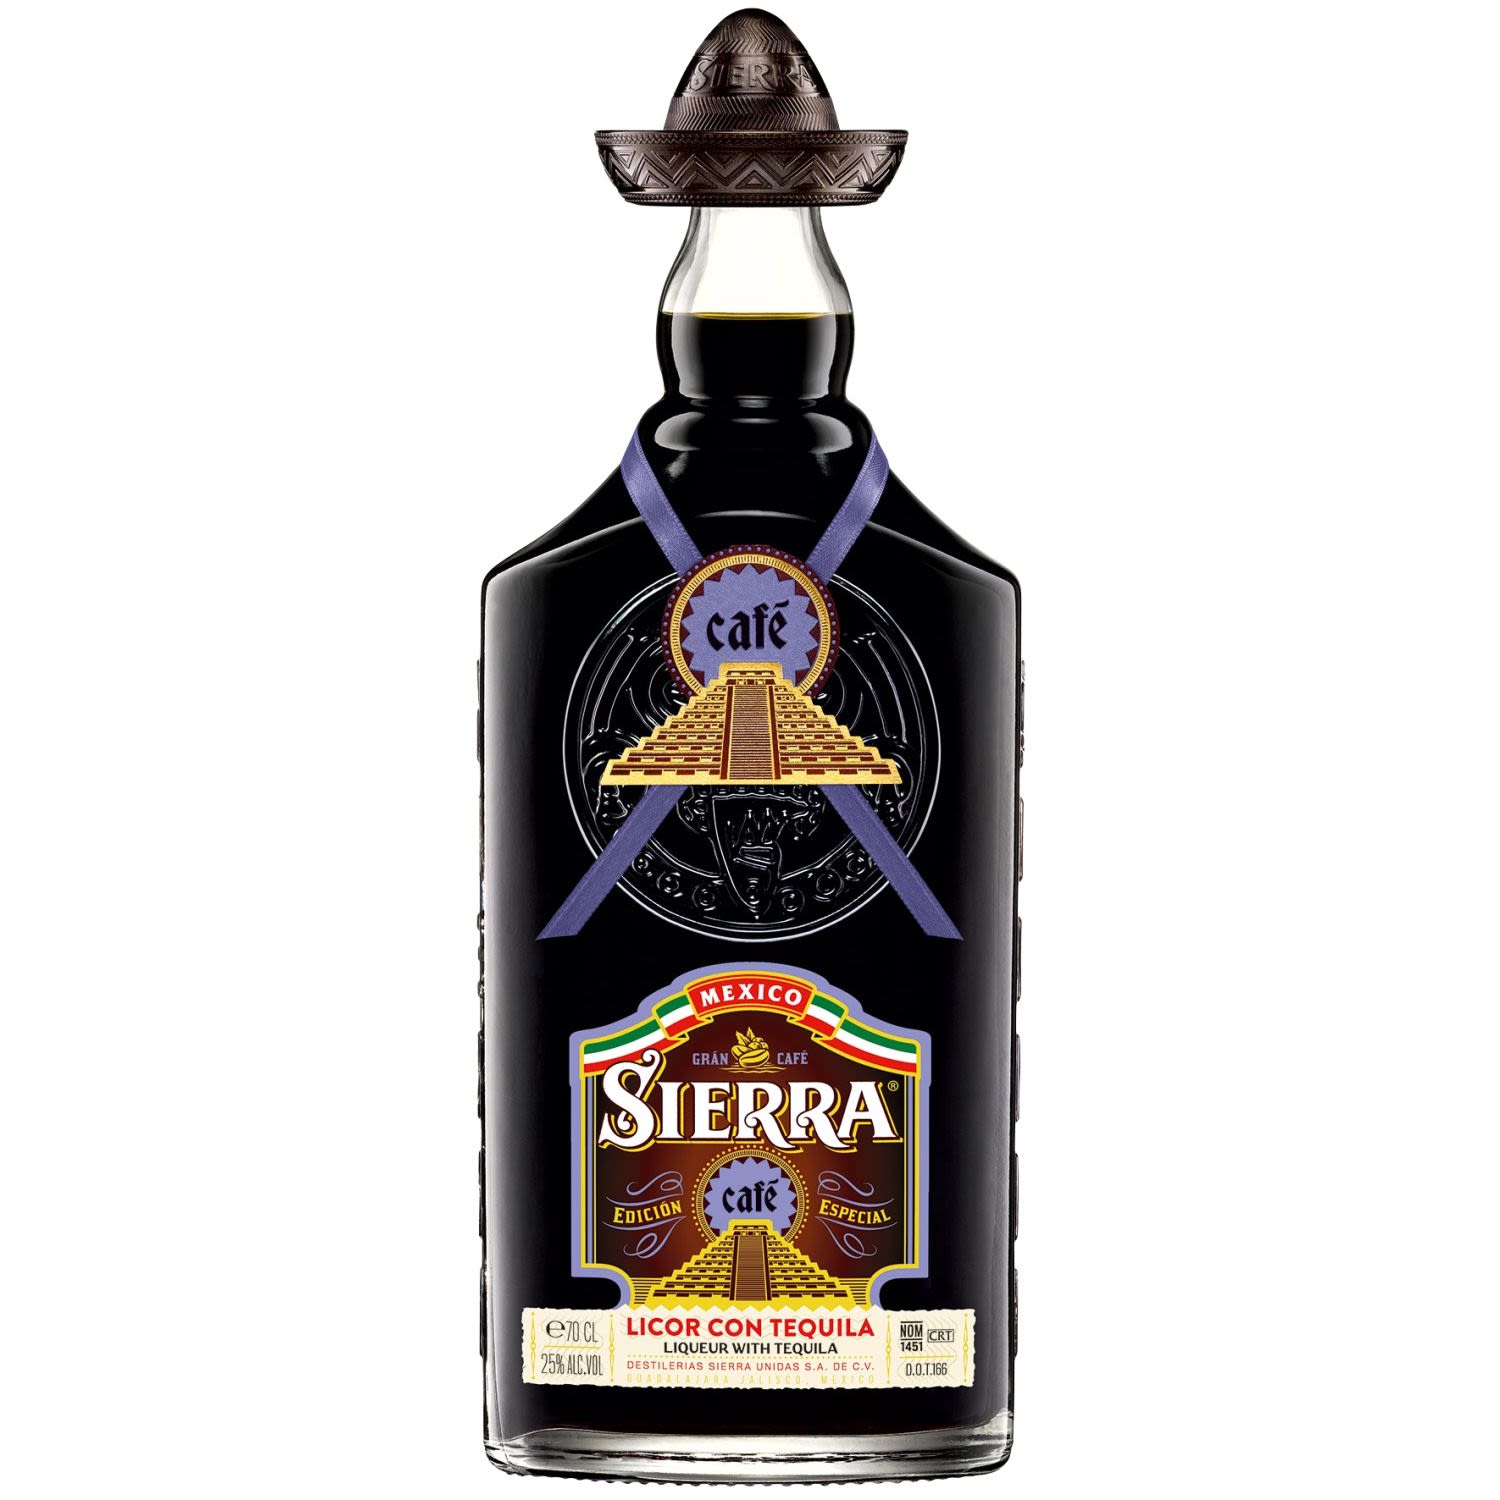 SIERRA TEQUILA CAFE 700mL<br /> <br />Alcohol Volume: 25.00%<br /><br />Pack Format: Bottle<br /><br />Standard Drinks: 14</br /><br />Pack Type: Bottle<br />